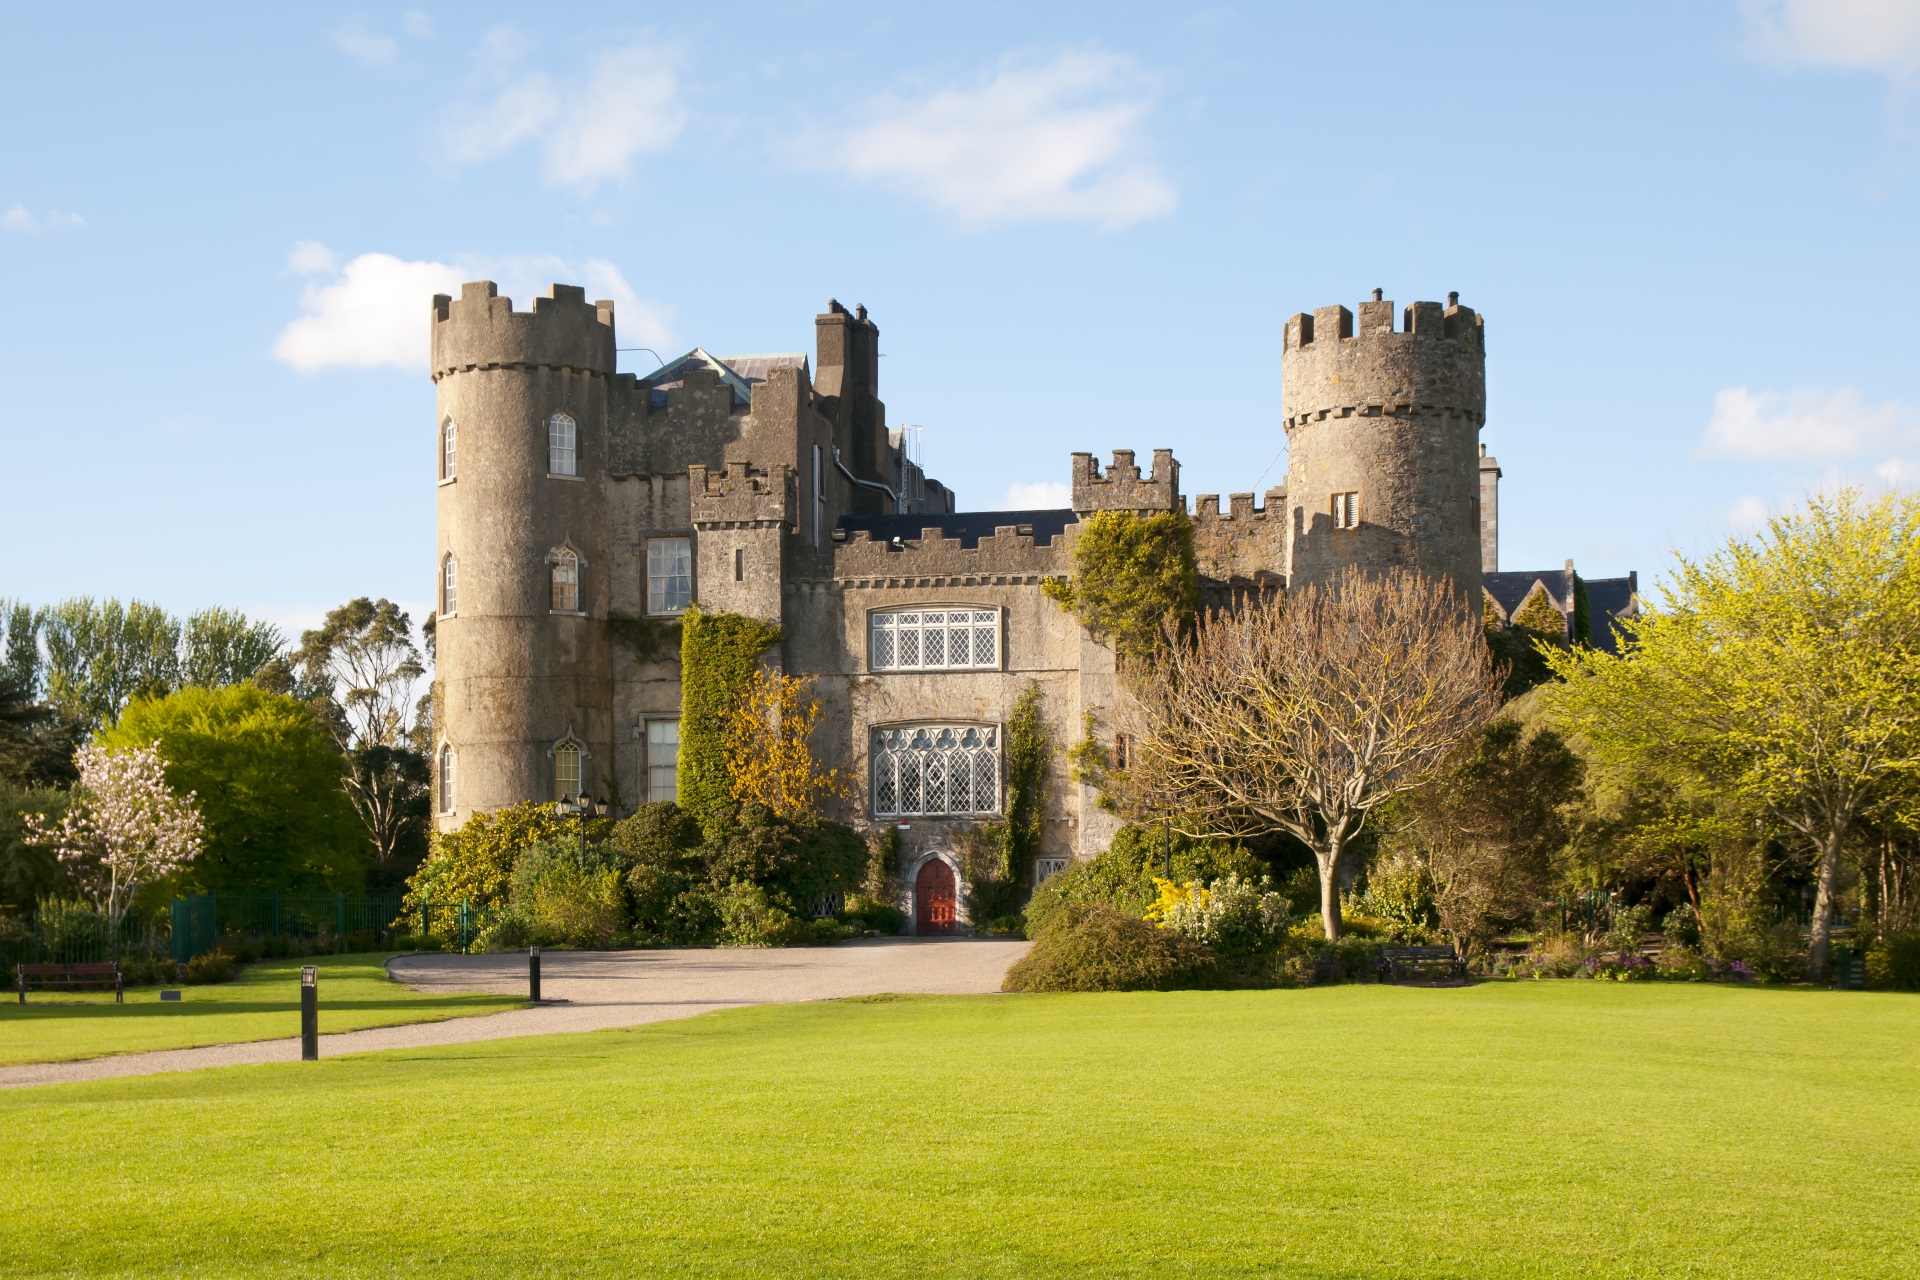 Malahide Castle in Dublin.